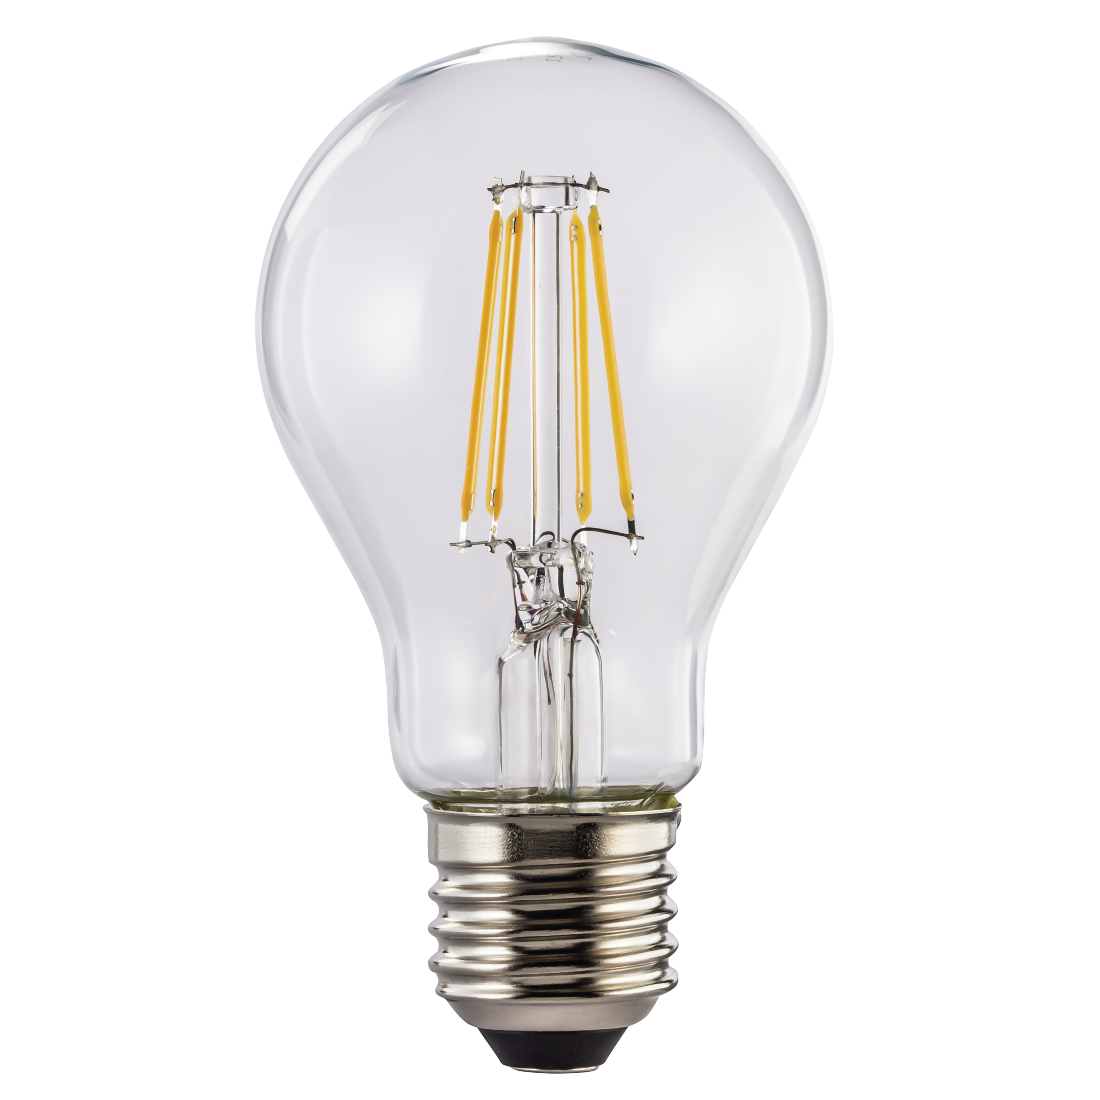 abx High-Res Image - Xavax, Ampoule filament à LED, E27, 810lm rempl. amp. incand., 60W, blc chaud